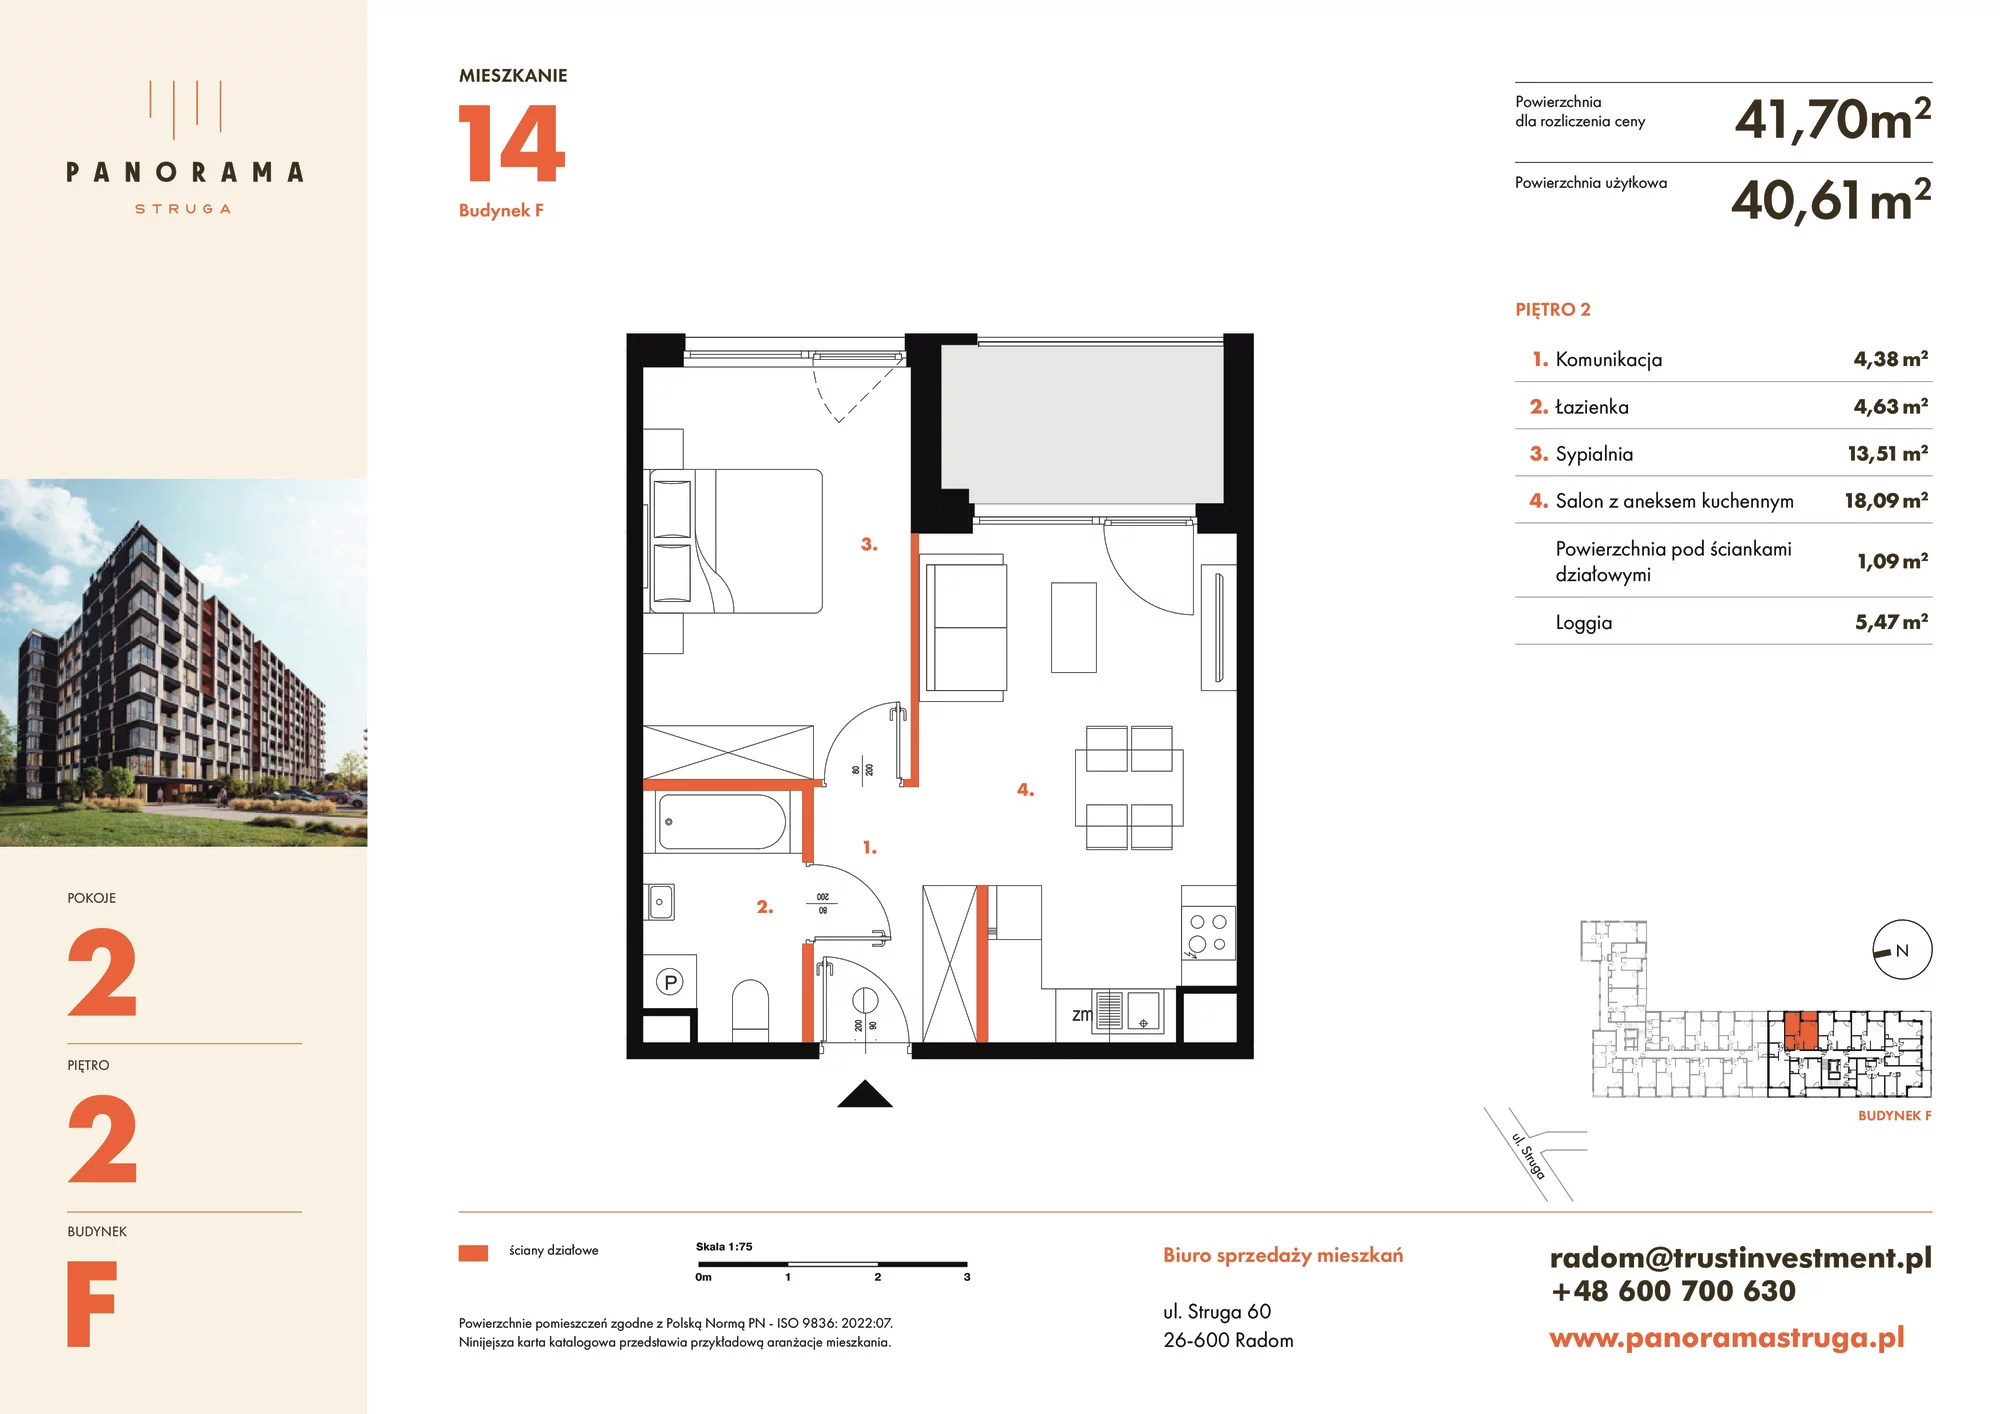 Mieszkanie 41,70 m², piętro 2, oferta nr F14, Panorama Struga, Radom, Śródmieście, ul. Andrzeja Struga 60